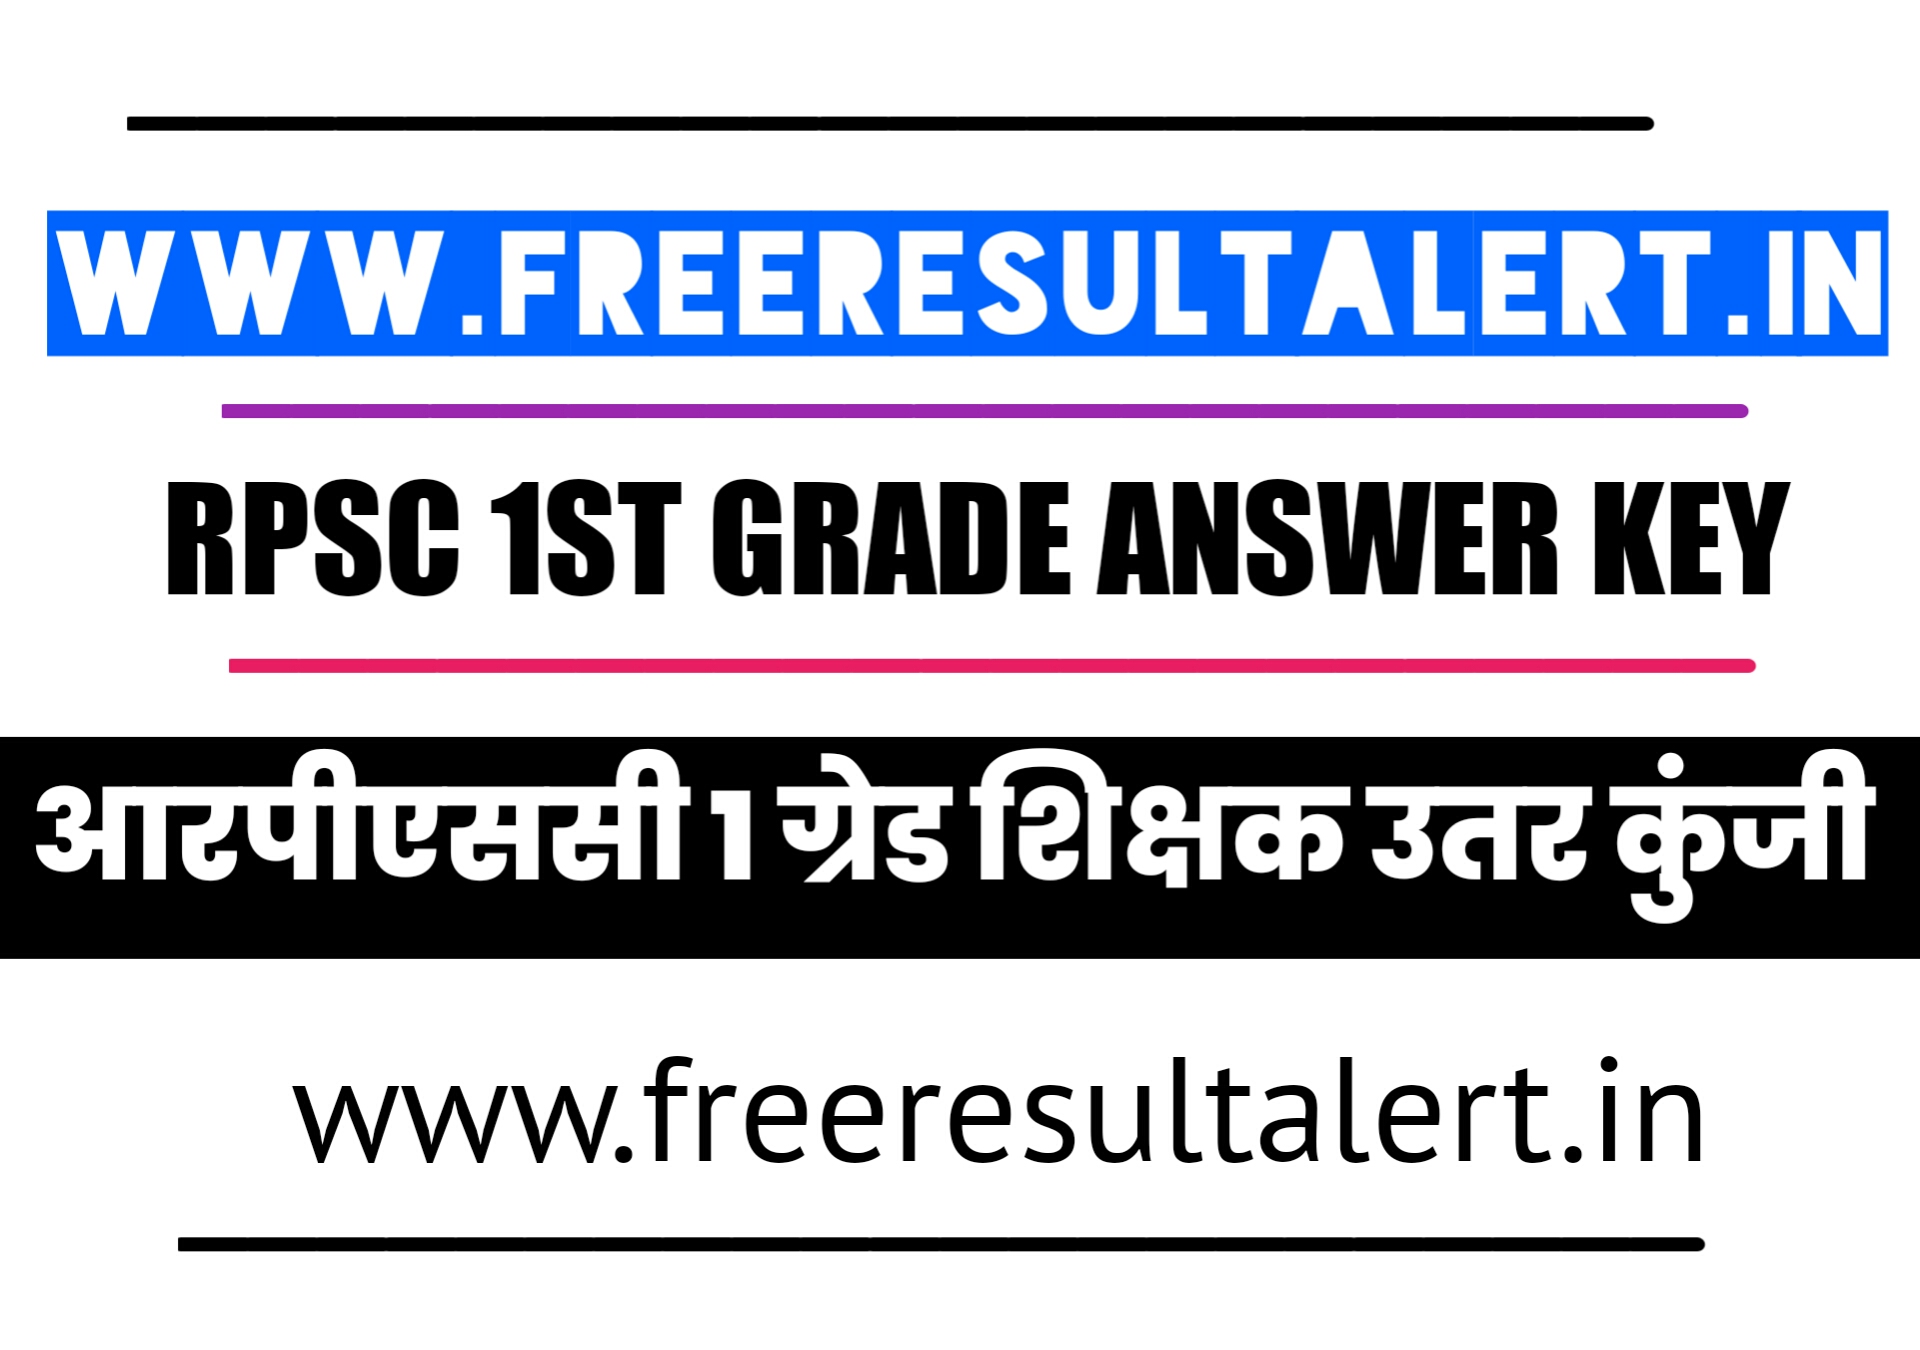 RPSC 1st Grade GK Answer key 06 Jan 2020